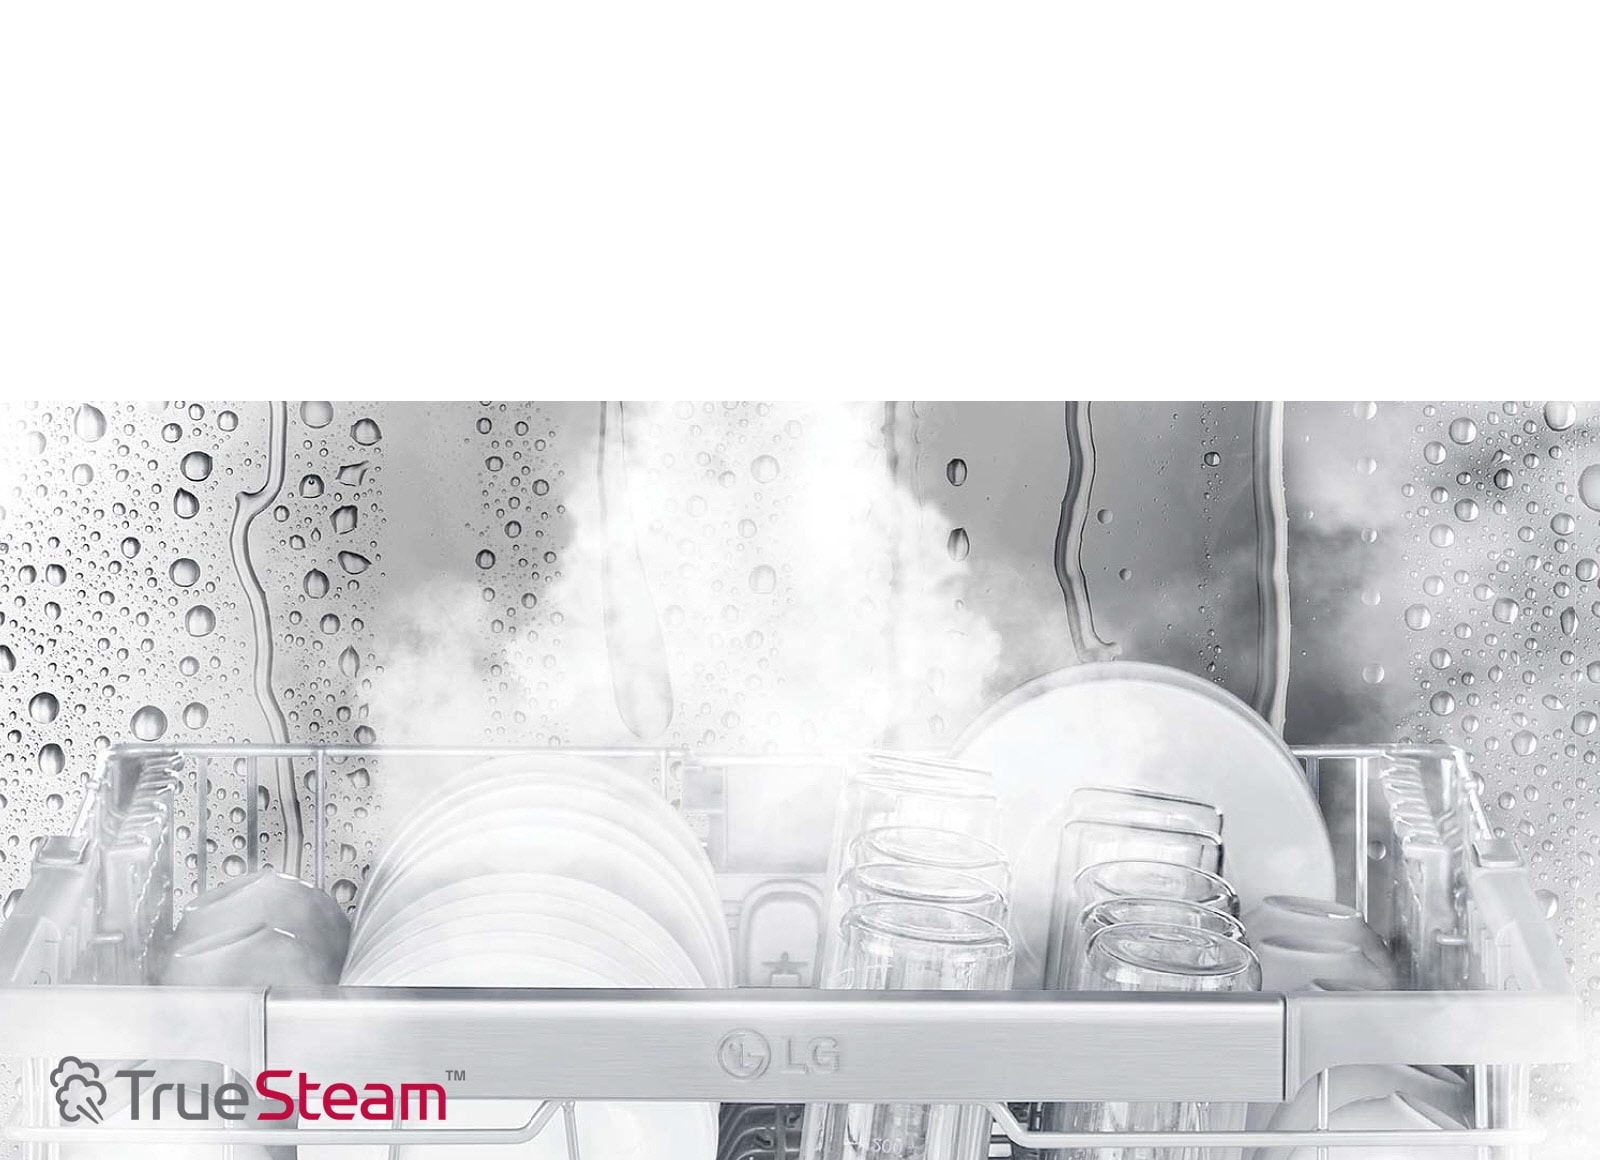 فناوری True Steam در ظرفشویی DFB425FW